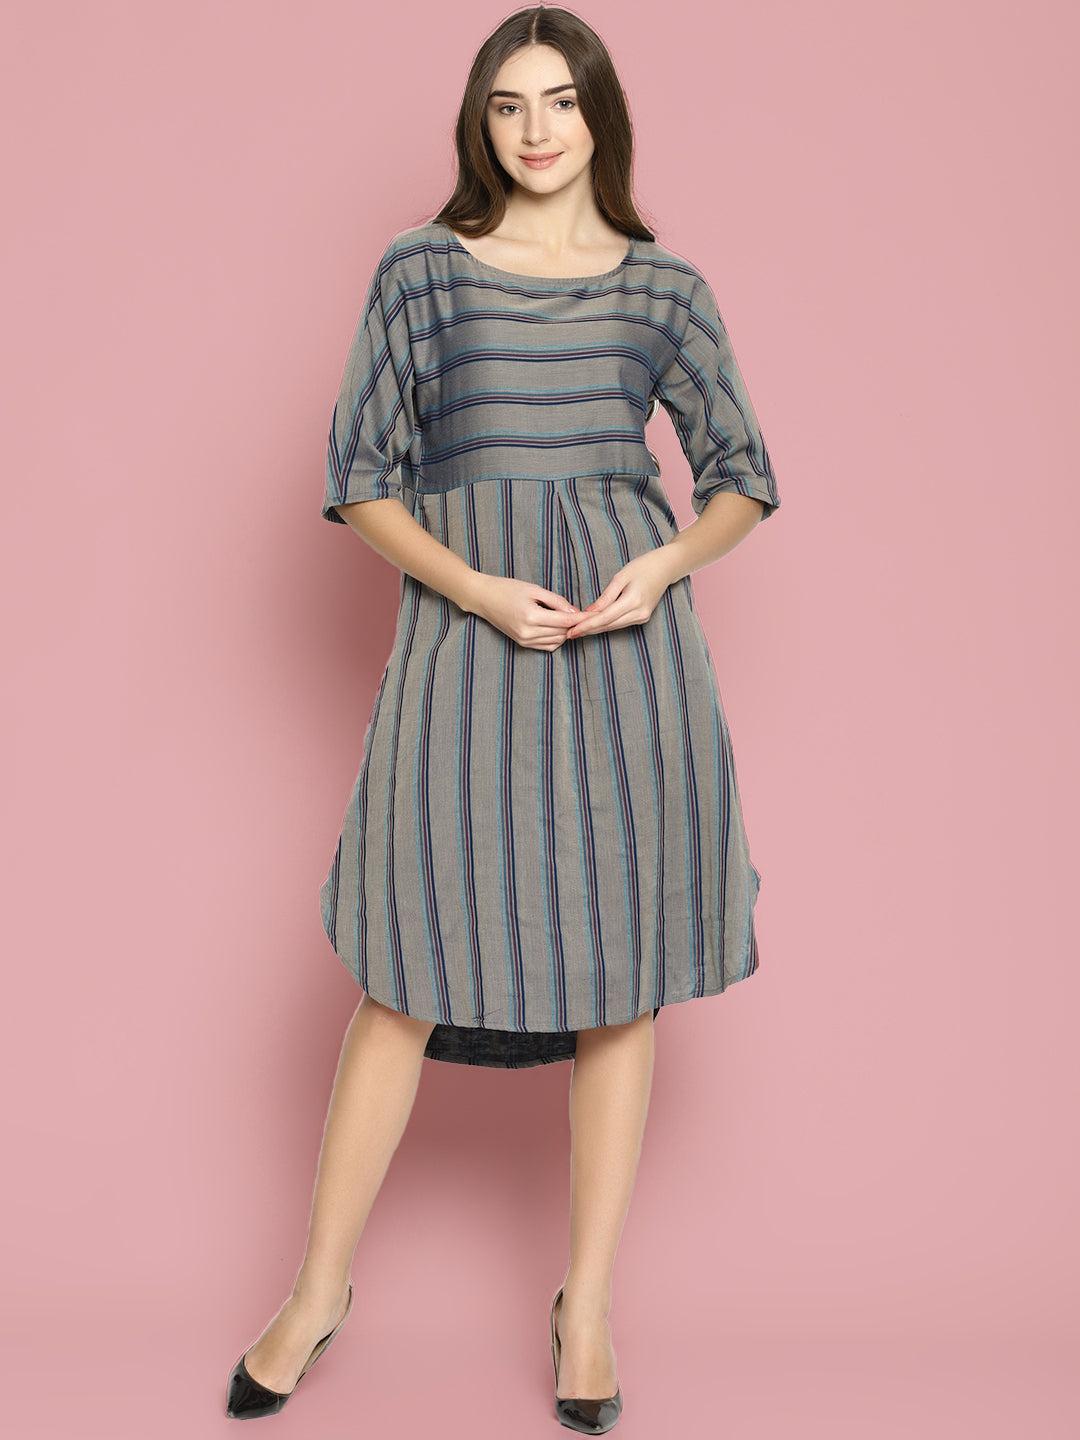 grey striped dress with curved hemline